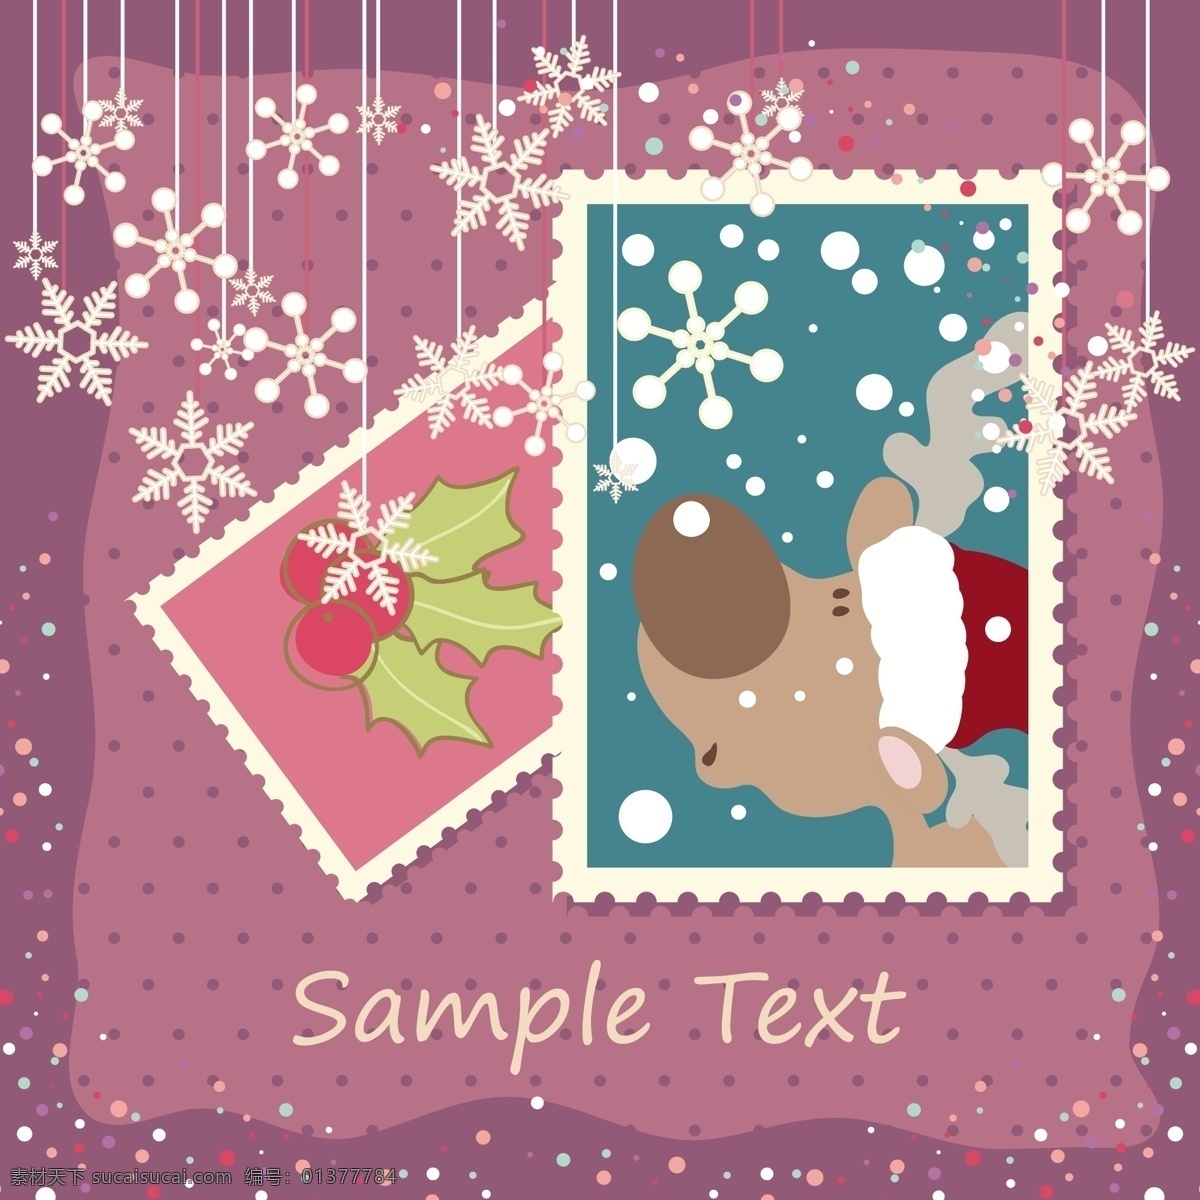 淡雅 圣诞节 邮票 矢量 eps格式 背景 饼干 可爱 麋鹿 圣诞树 矢量素材 星星 雪人 雪花 节日素材